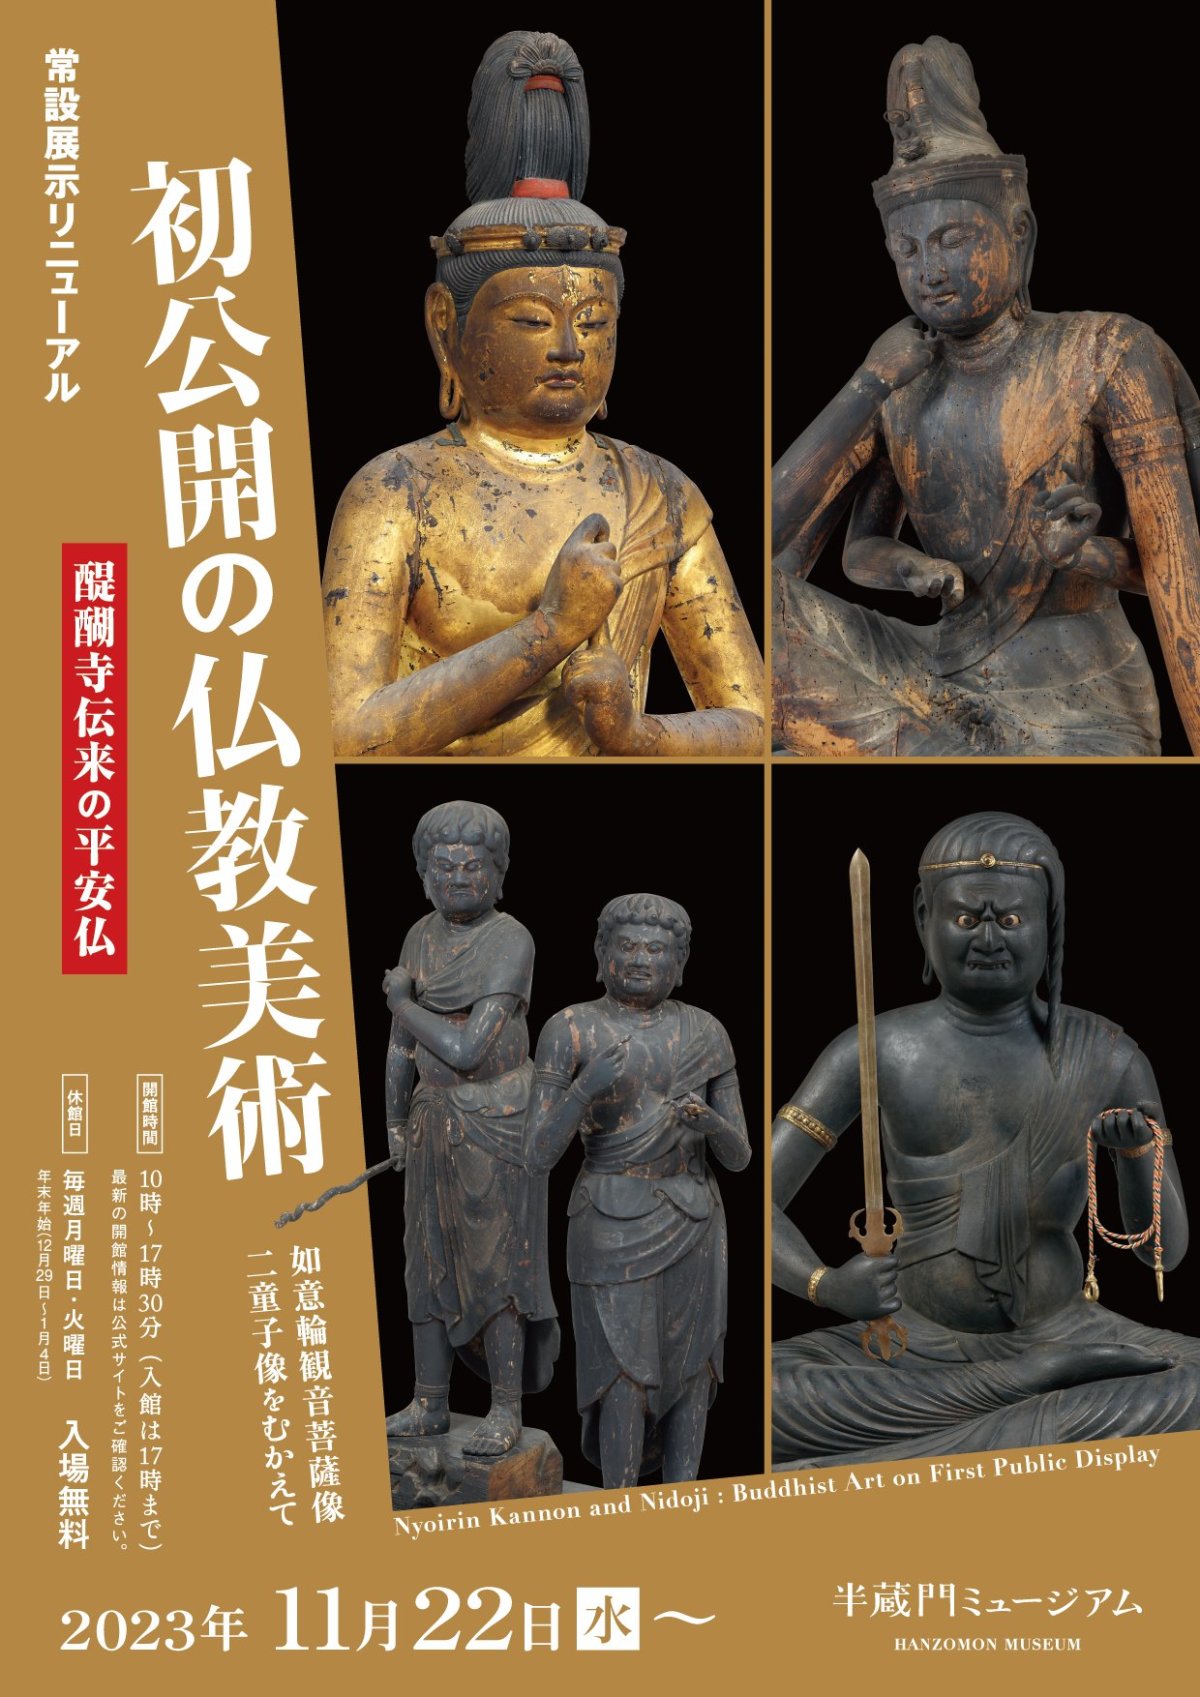 初公開の仏教美術―如意輪観音菩薩像・二童子像をむかえて―」 （半蔵門 